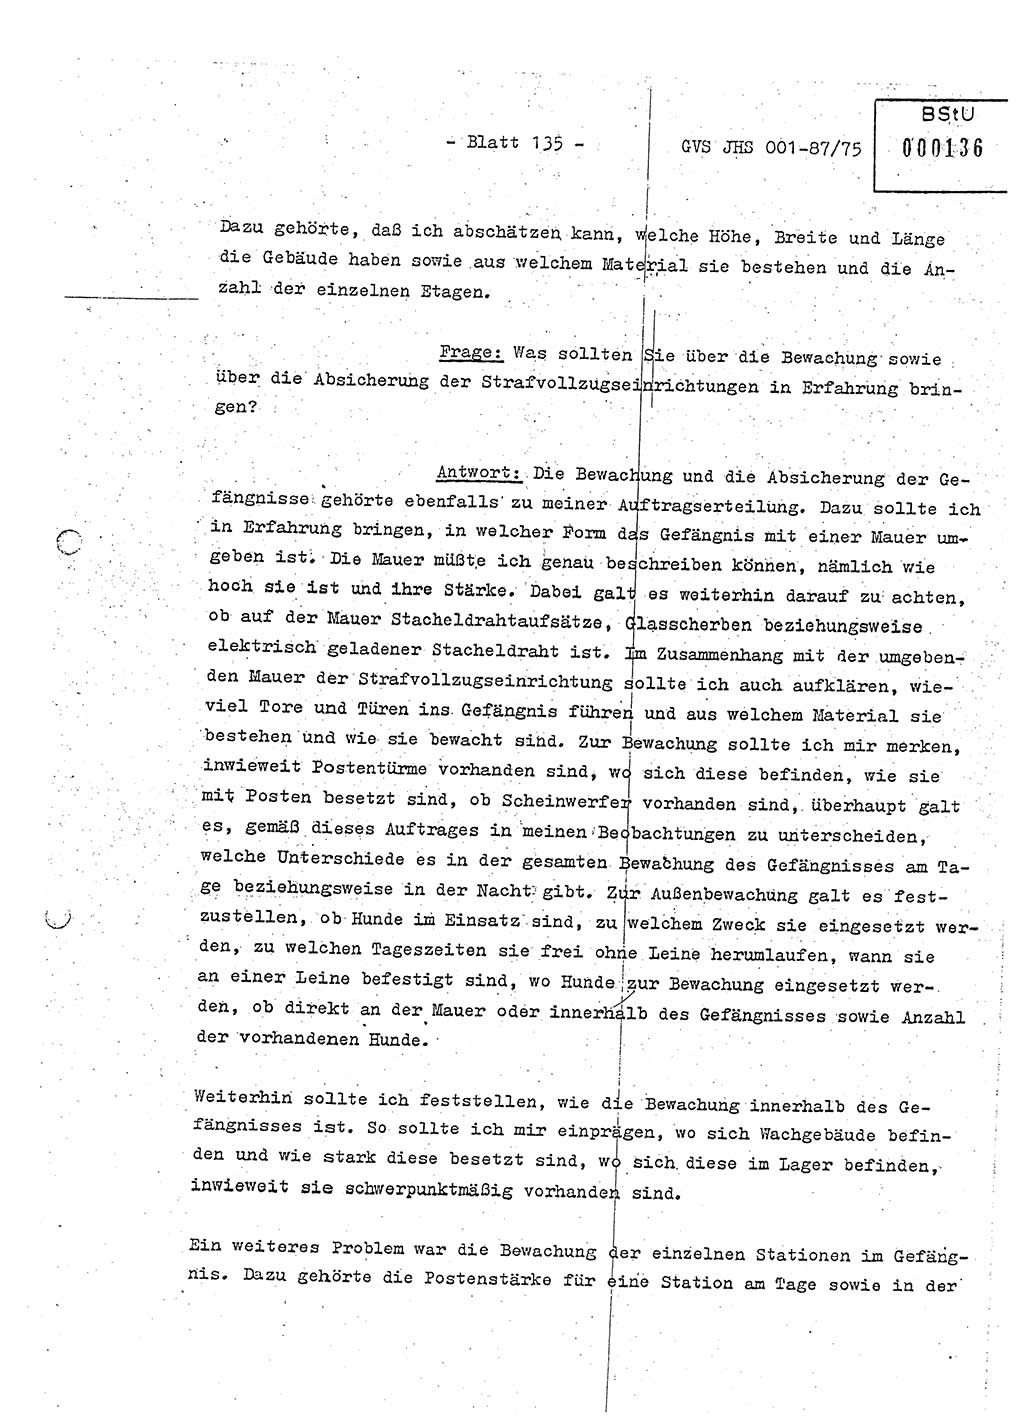 Diplomarbeit Hauptmann Volkmar Heinz (Abt. ⅩⅣ), Oberleutnant Lothar Rüdiger (BV Lpz. Abt. Ⅺ), Ministerium für Staatssicherheit (MfS) [Deutsche Demokratische Republik (DDR)], Juristische Hochschule (JHS), Geheime Verschlußsache (GVS) o001-87/75, Potsdam 1975, Seite 135 (Dipl.-Arb. MfS DDR JHS GVS o001-87/75 1975, S. 135)